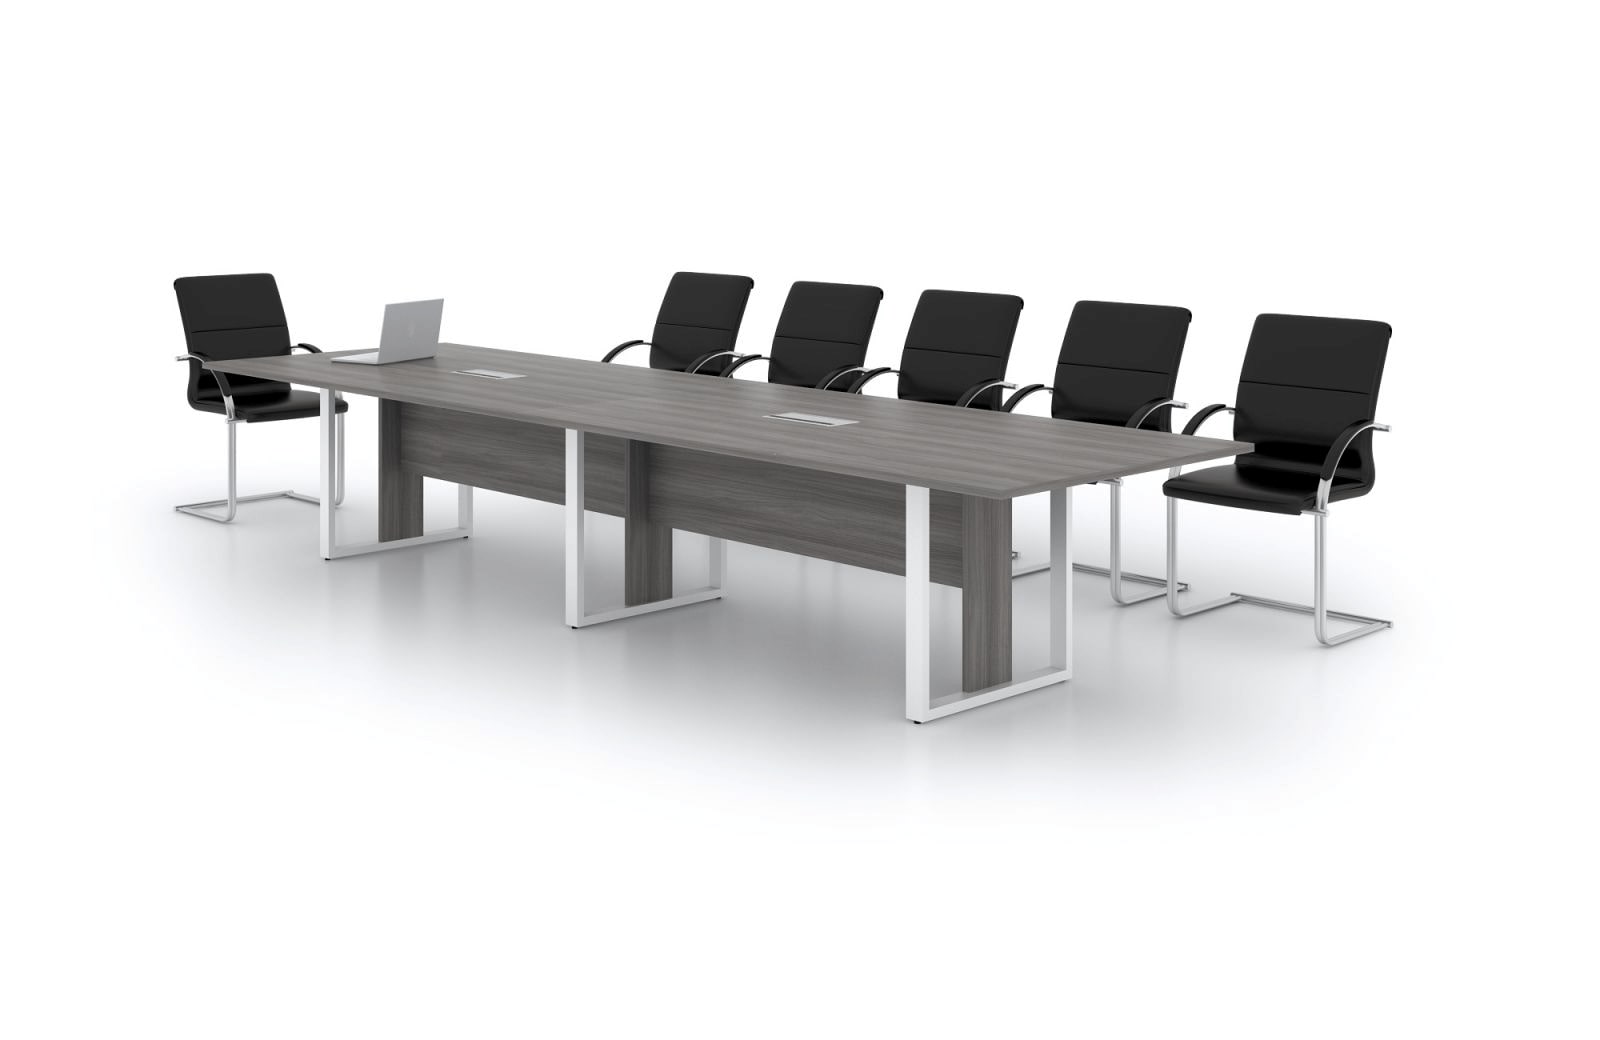 Các mẫu bàn sắt đẹp cho phòng họp được ưa chuộng bởi nhiều người dùng khi sở hữu nhiều ưu điểm nổi bật